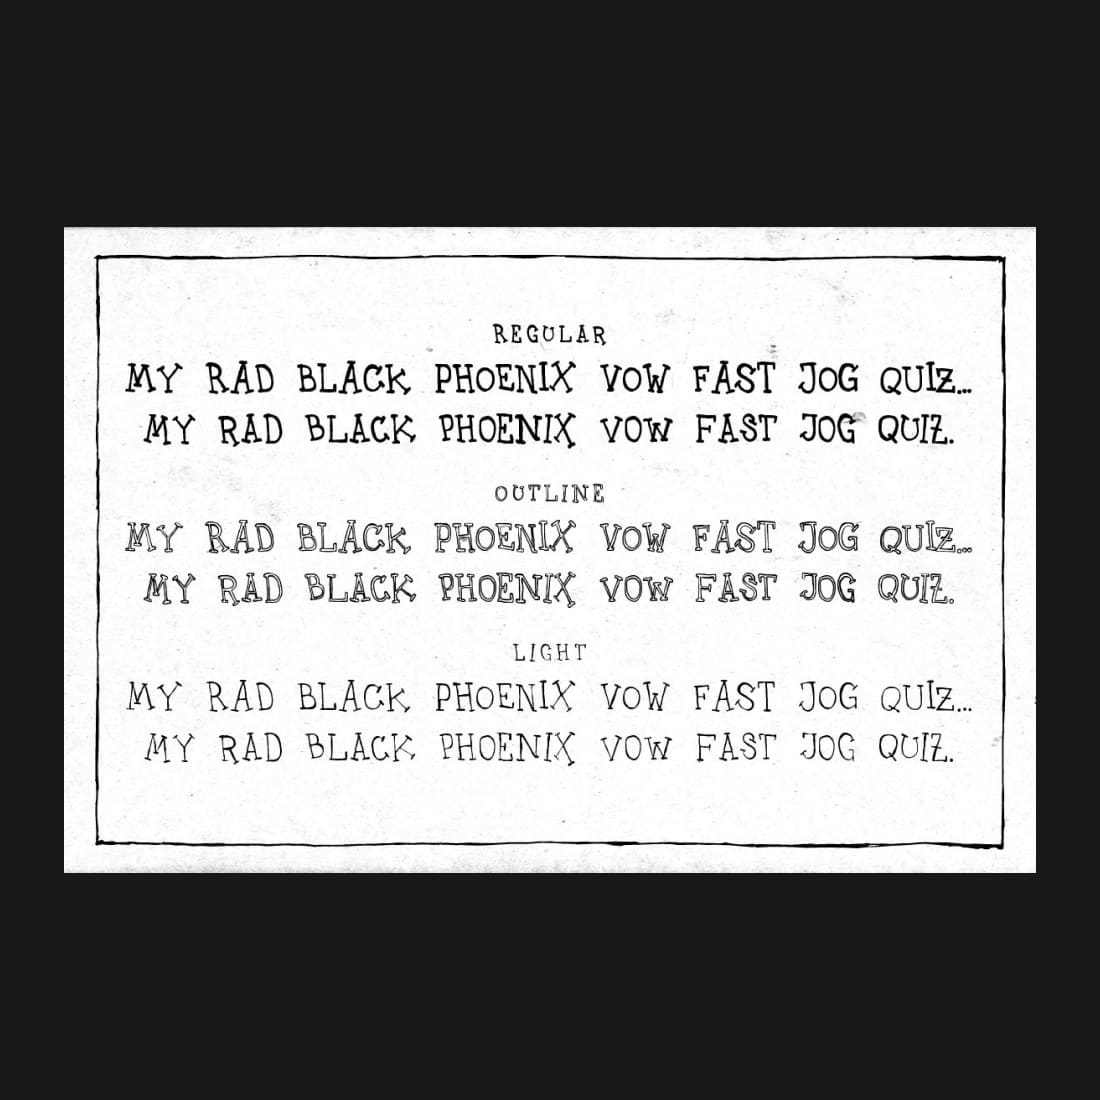 Uncle Lee Outline - "My Rad Black Phoenix Vow Fast Jog Quiz" By Dawnland.